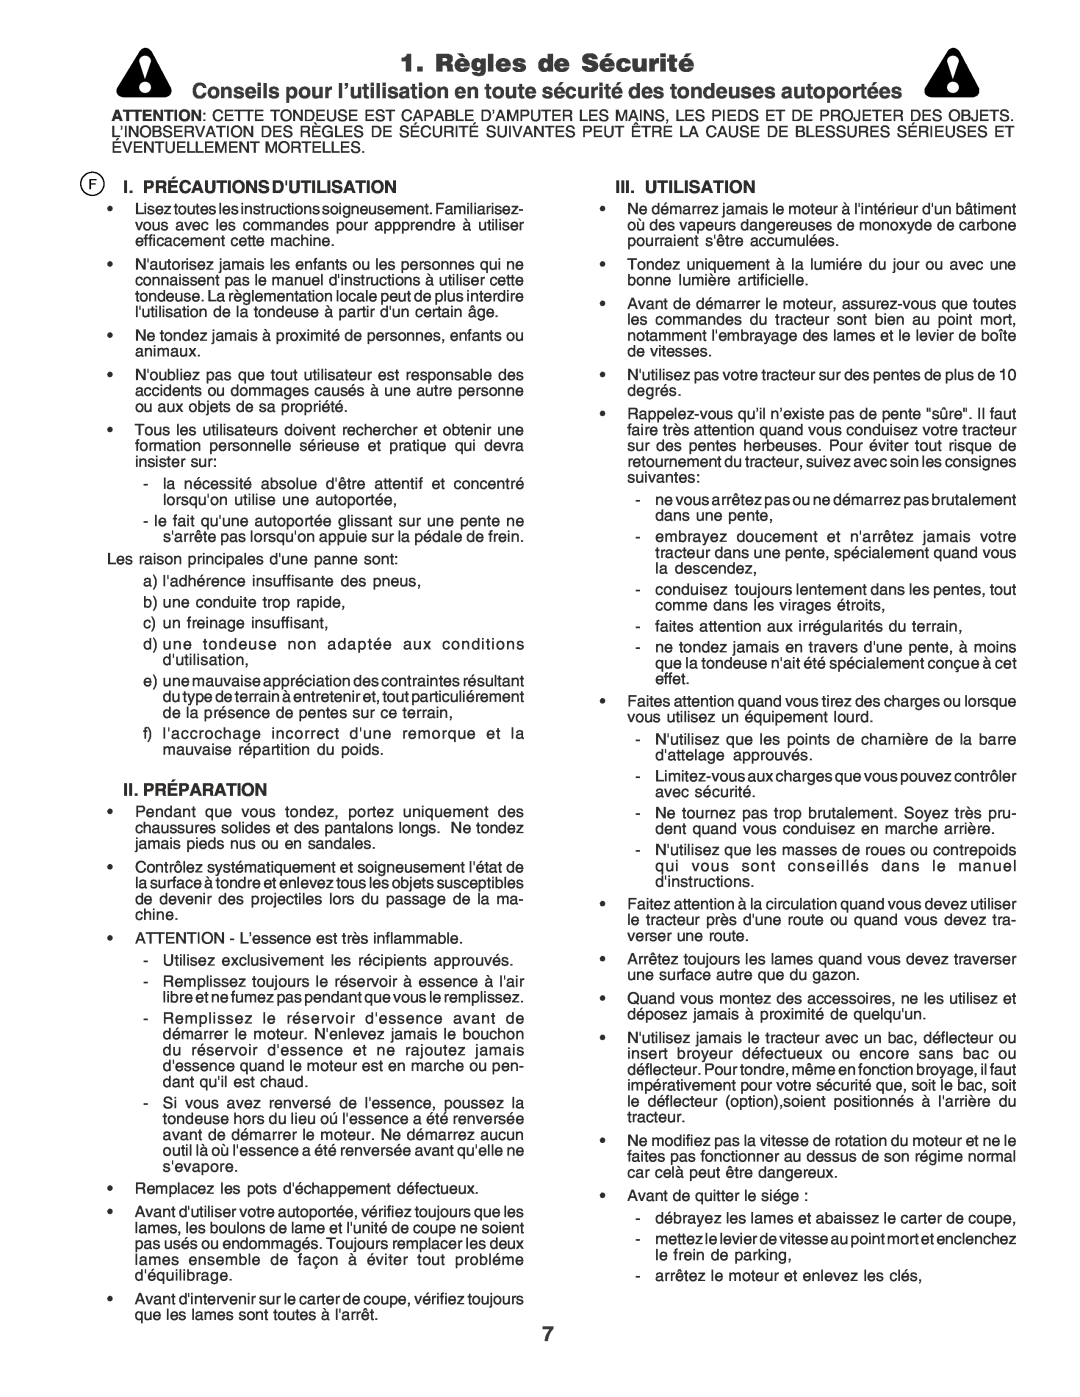 Husqvarna CTH170 instruction manual 1. Règles de Sécurité, F I. Précautions Dutilisation, Ii. Préparation, Iii. Utilisation 